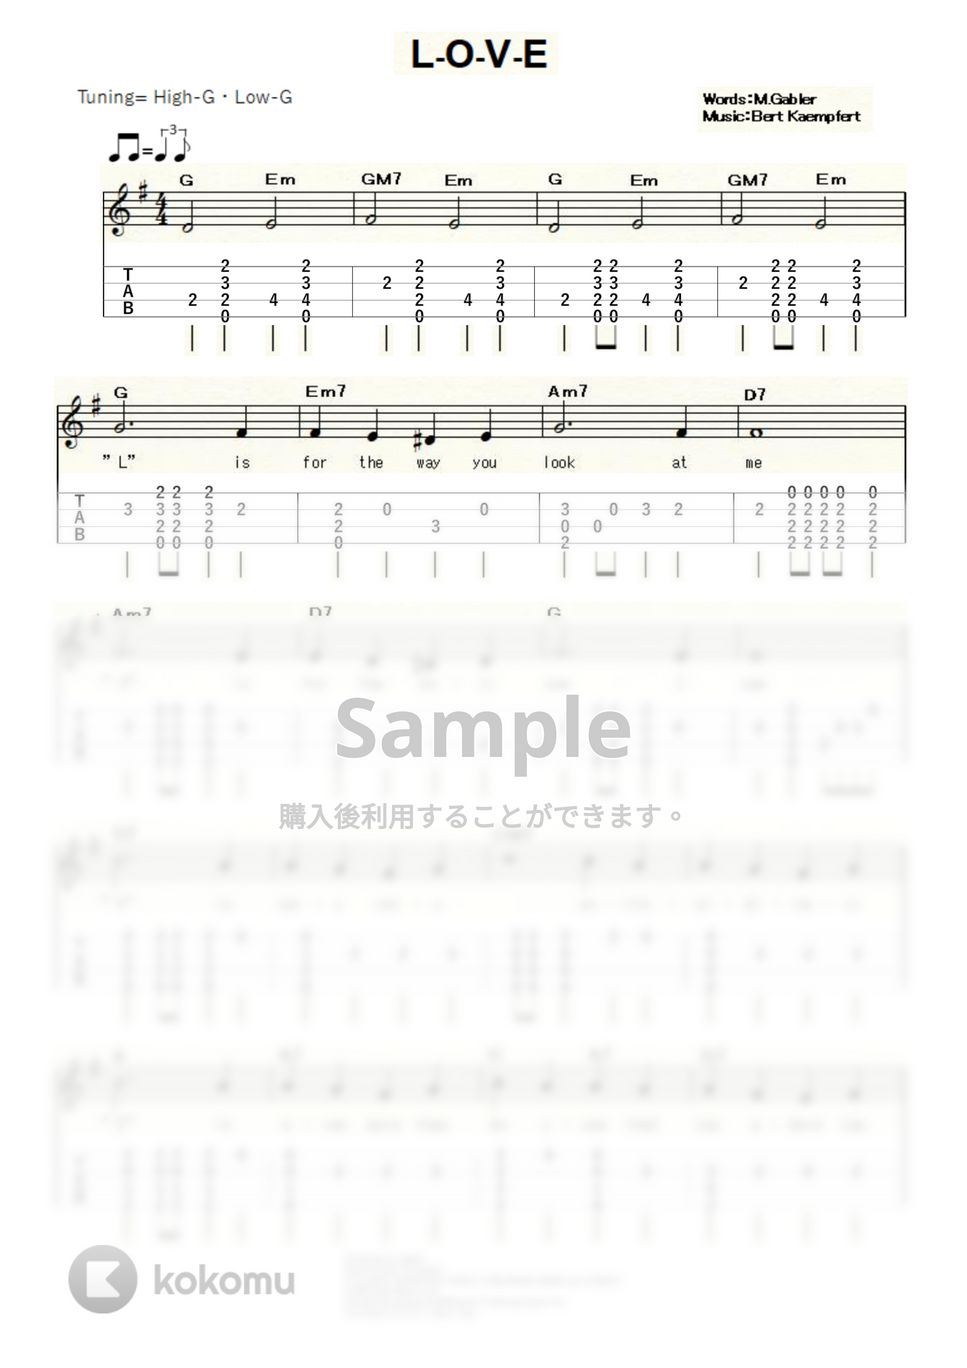 ナット・キング・コール - L-O-V-E (ｳｸﾚﾚｿﾛ / High-G,Low-G / 初～中級) by ukulelepapa